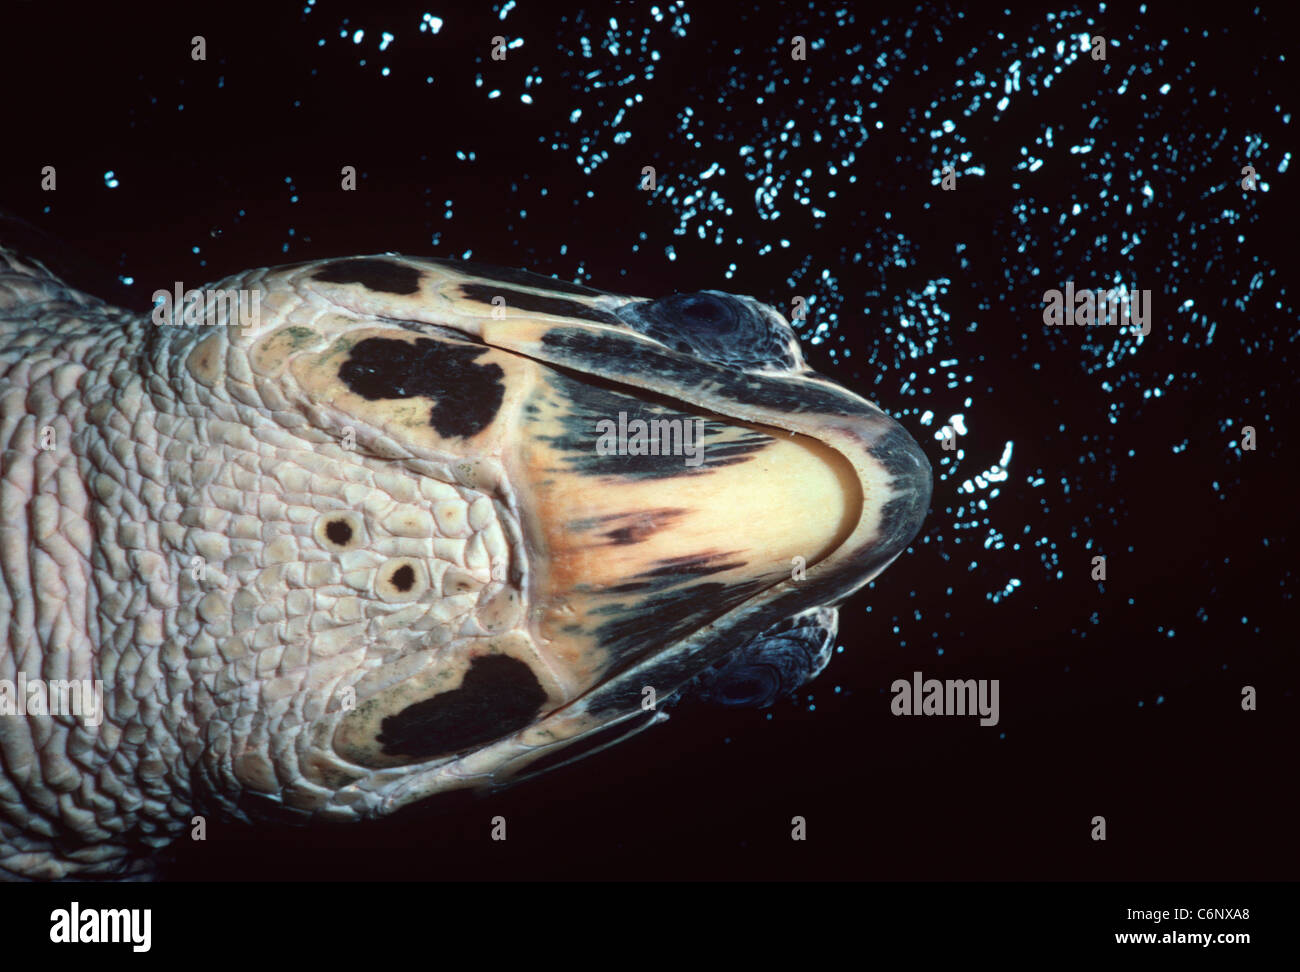 Vista parte inferiore di una tartaruga embricata (Eretmochelys imbricata) nuoto nei pressi di una scogliera di corallo di notte. Egitto, Mar Rosso Foto Stock